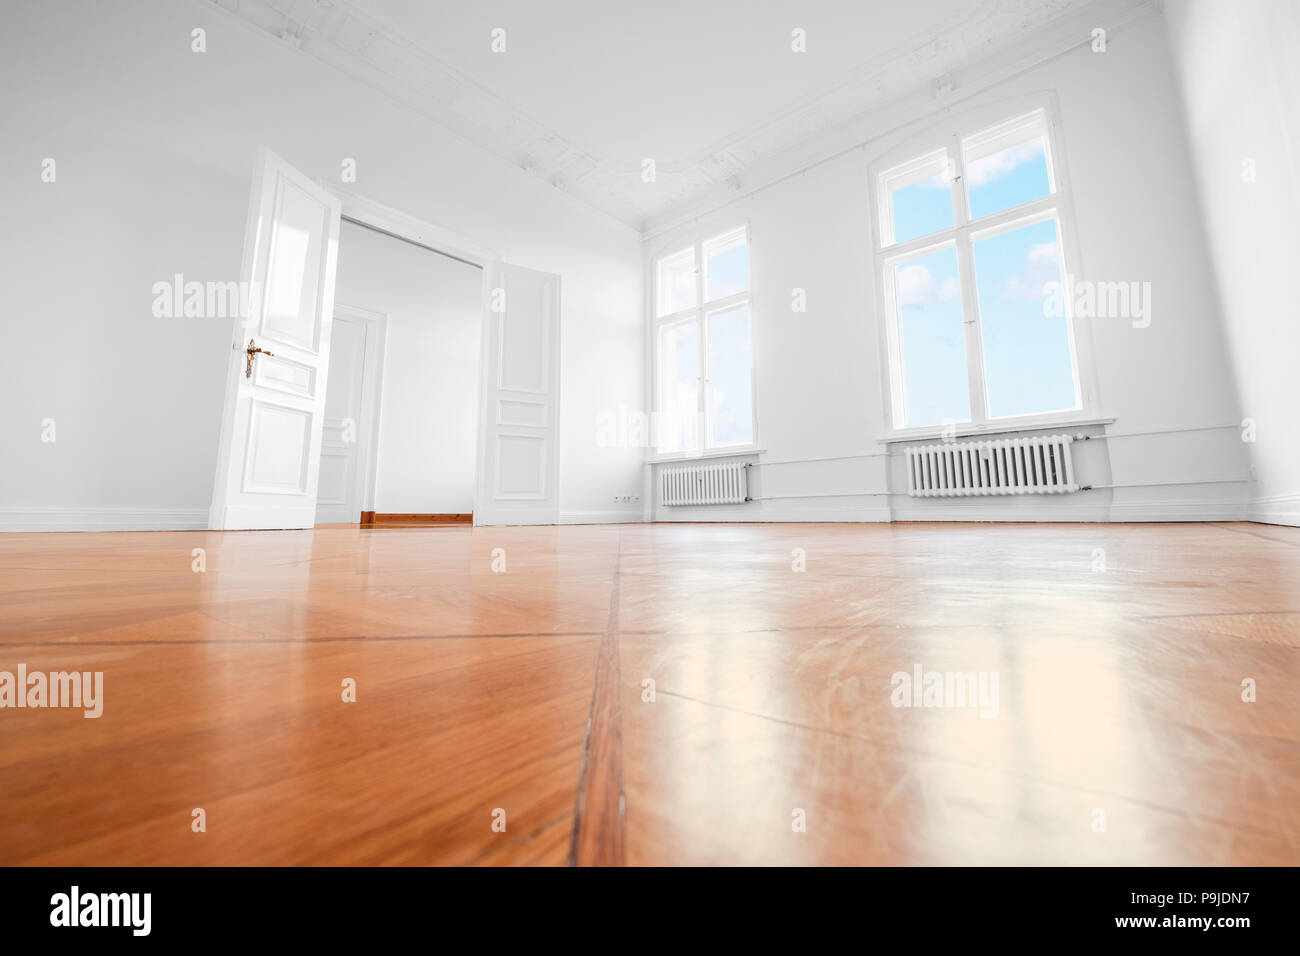 Salle vide après rénovation - Appartement rénové avec plancher en bois Banque D'Images